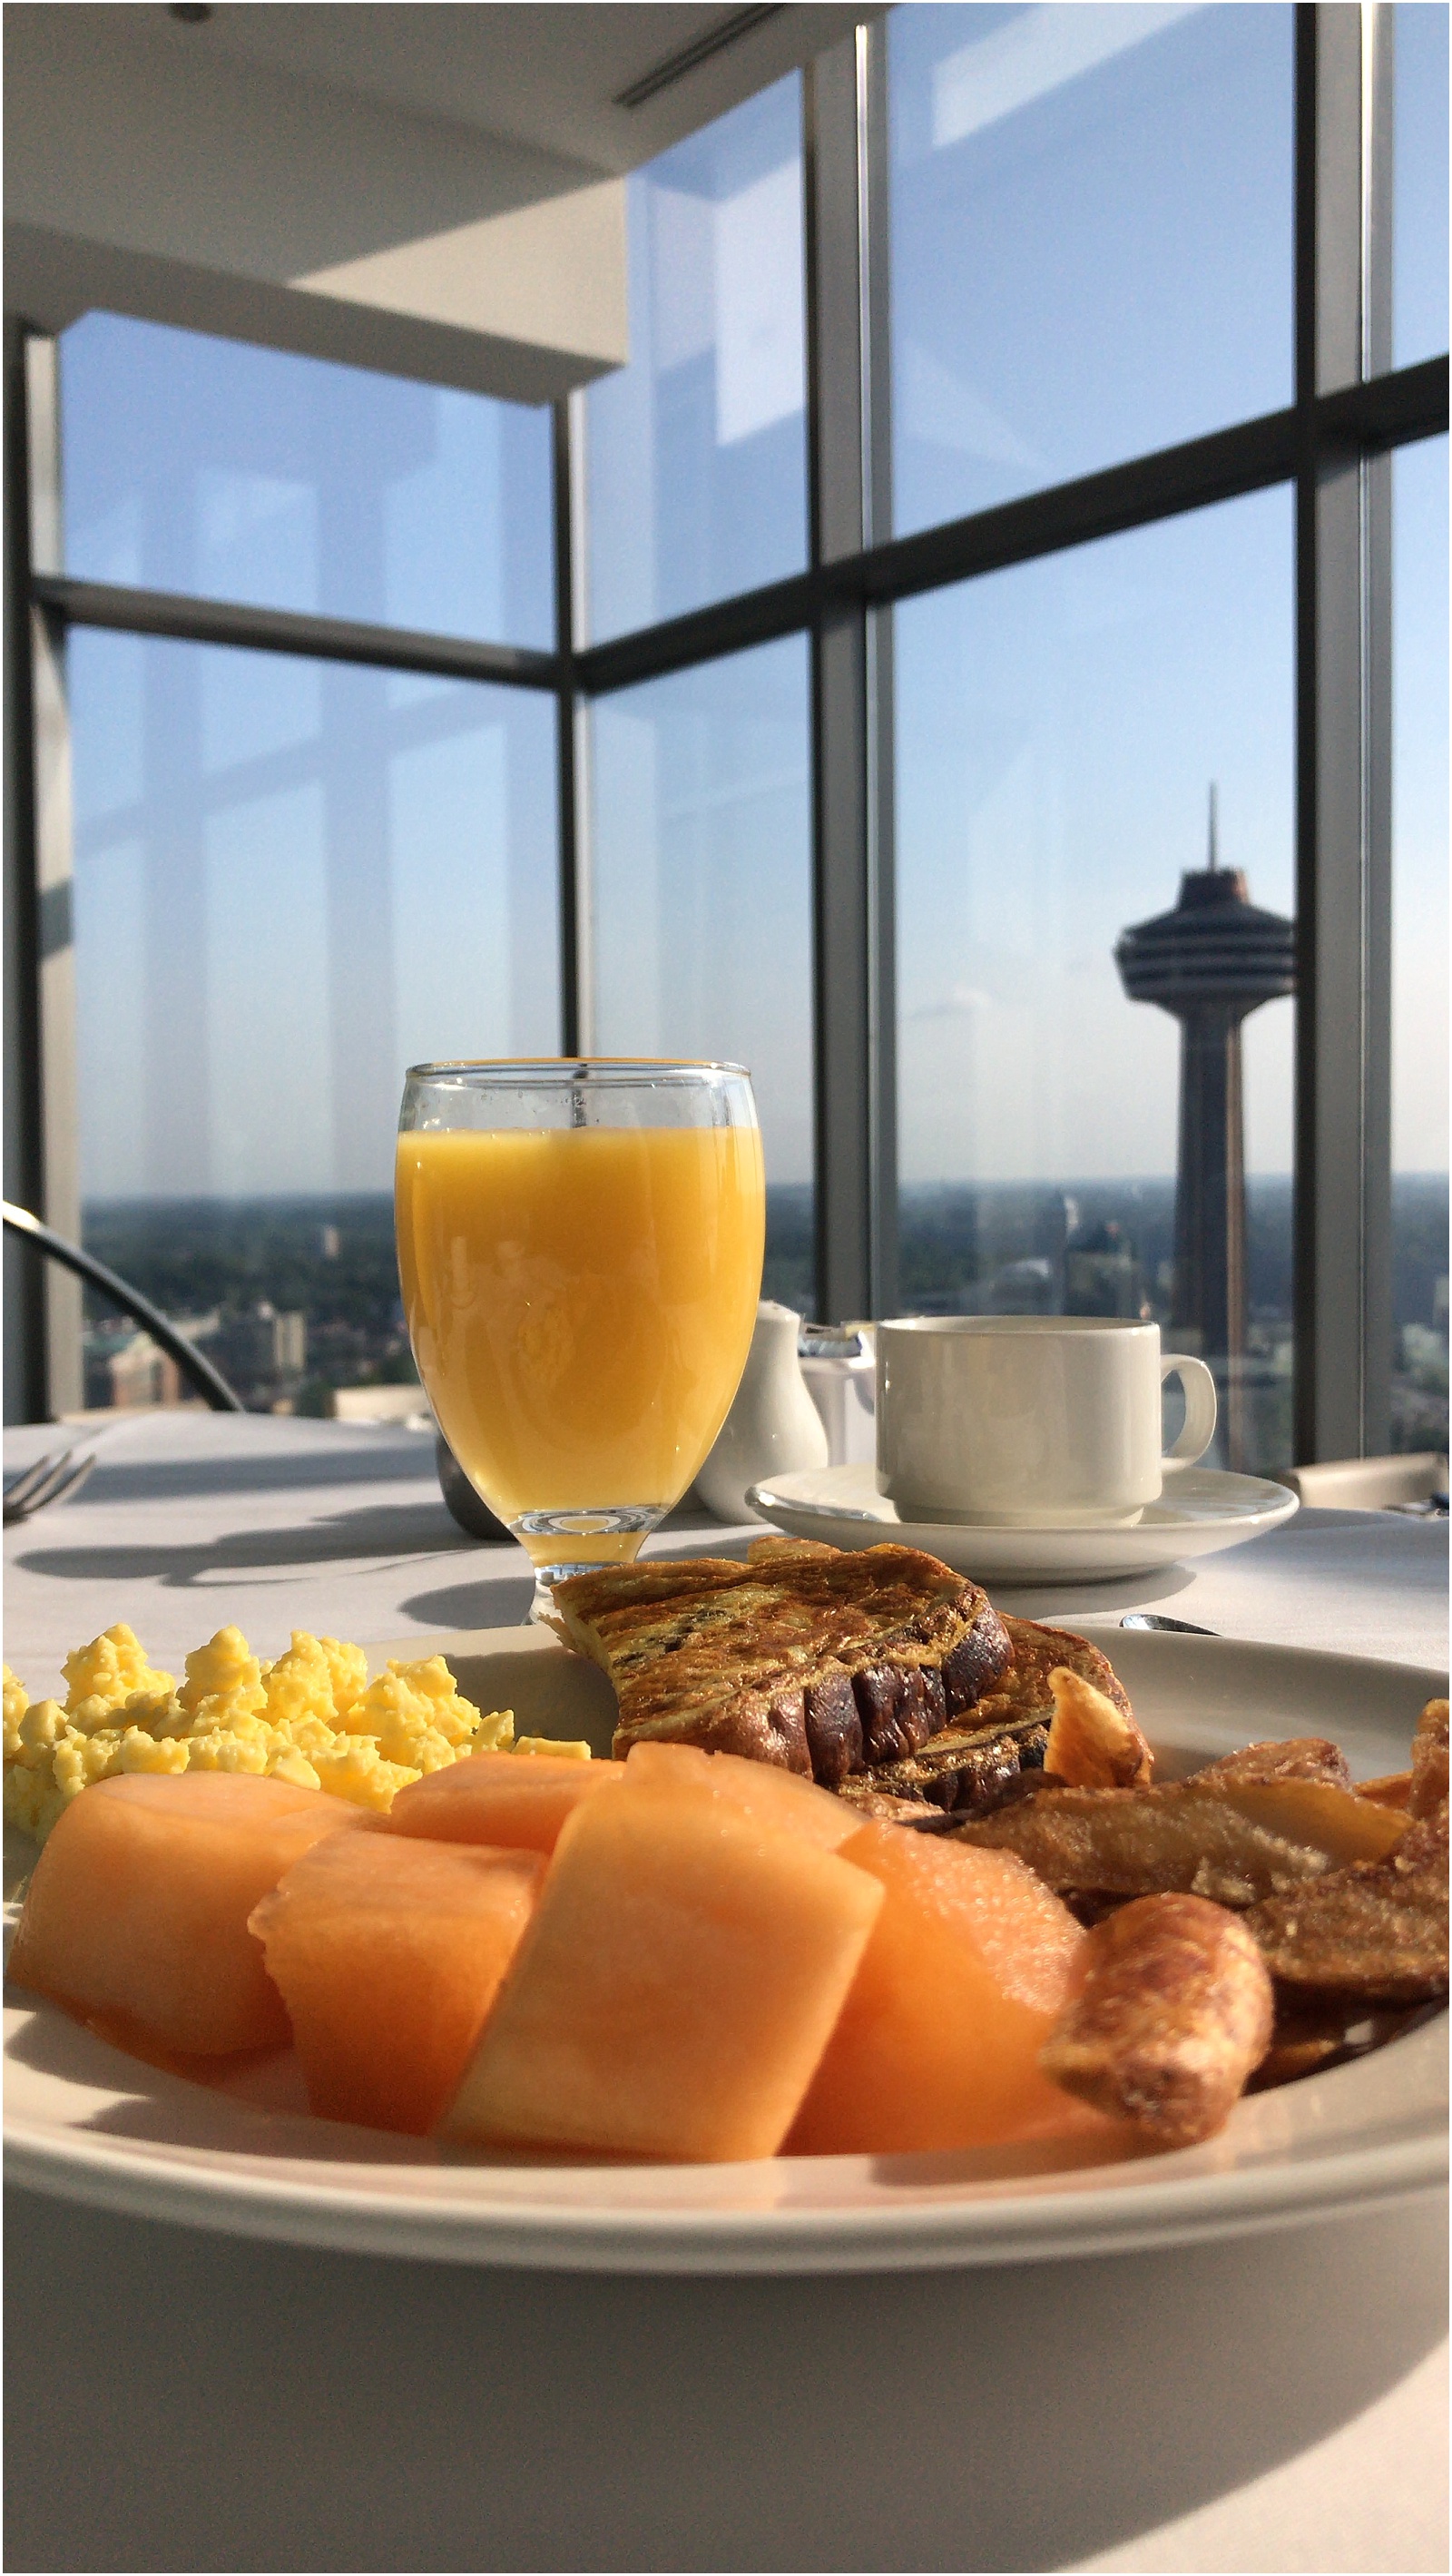 The Crowne Plaza Hotel Breakfast 33rd Floor Niagara Falls Ontario Canada